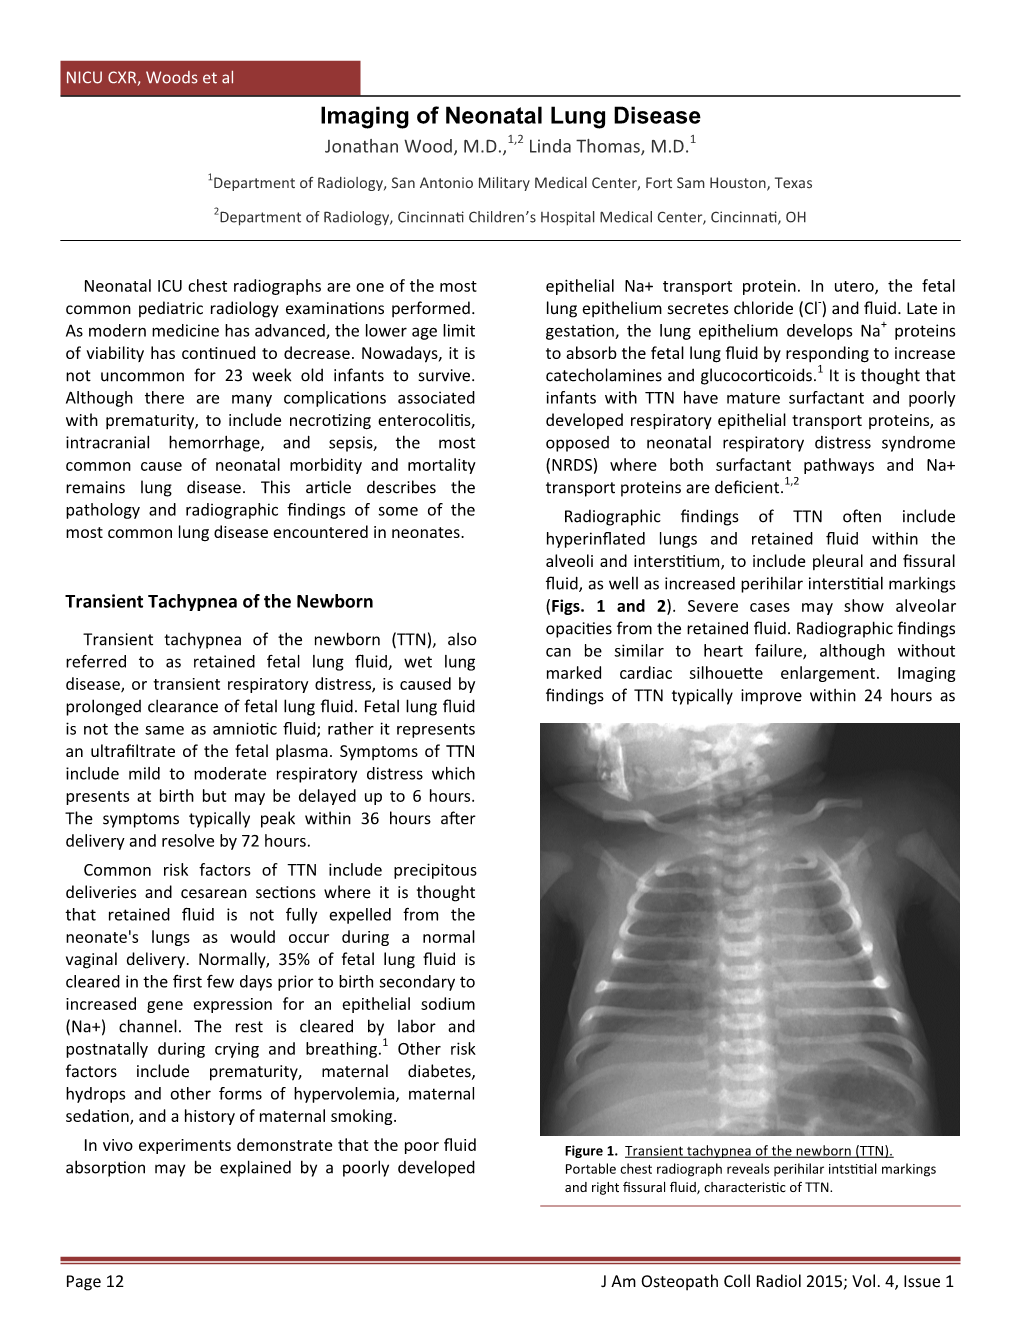 Imaging of Neonatal Lung Disease 1,2 1 Jonathan Wood, M.D., Linda Thomas, M.D